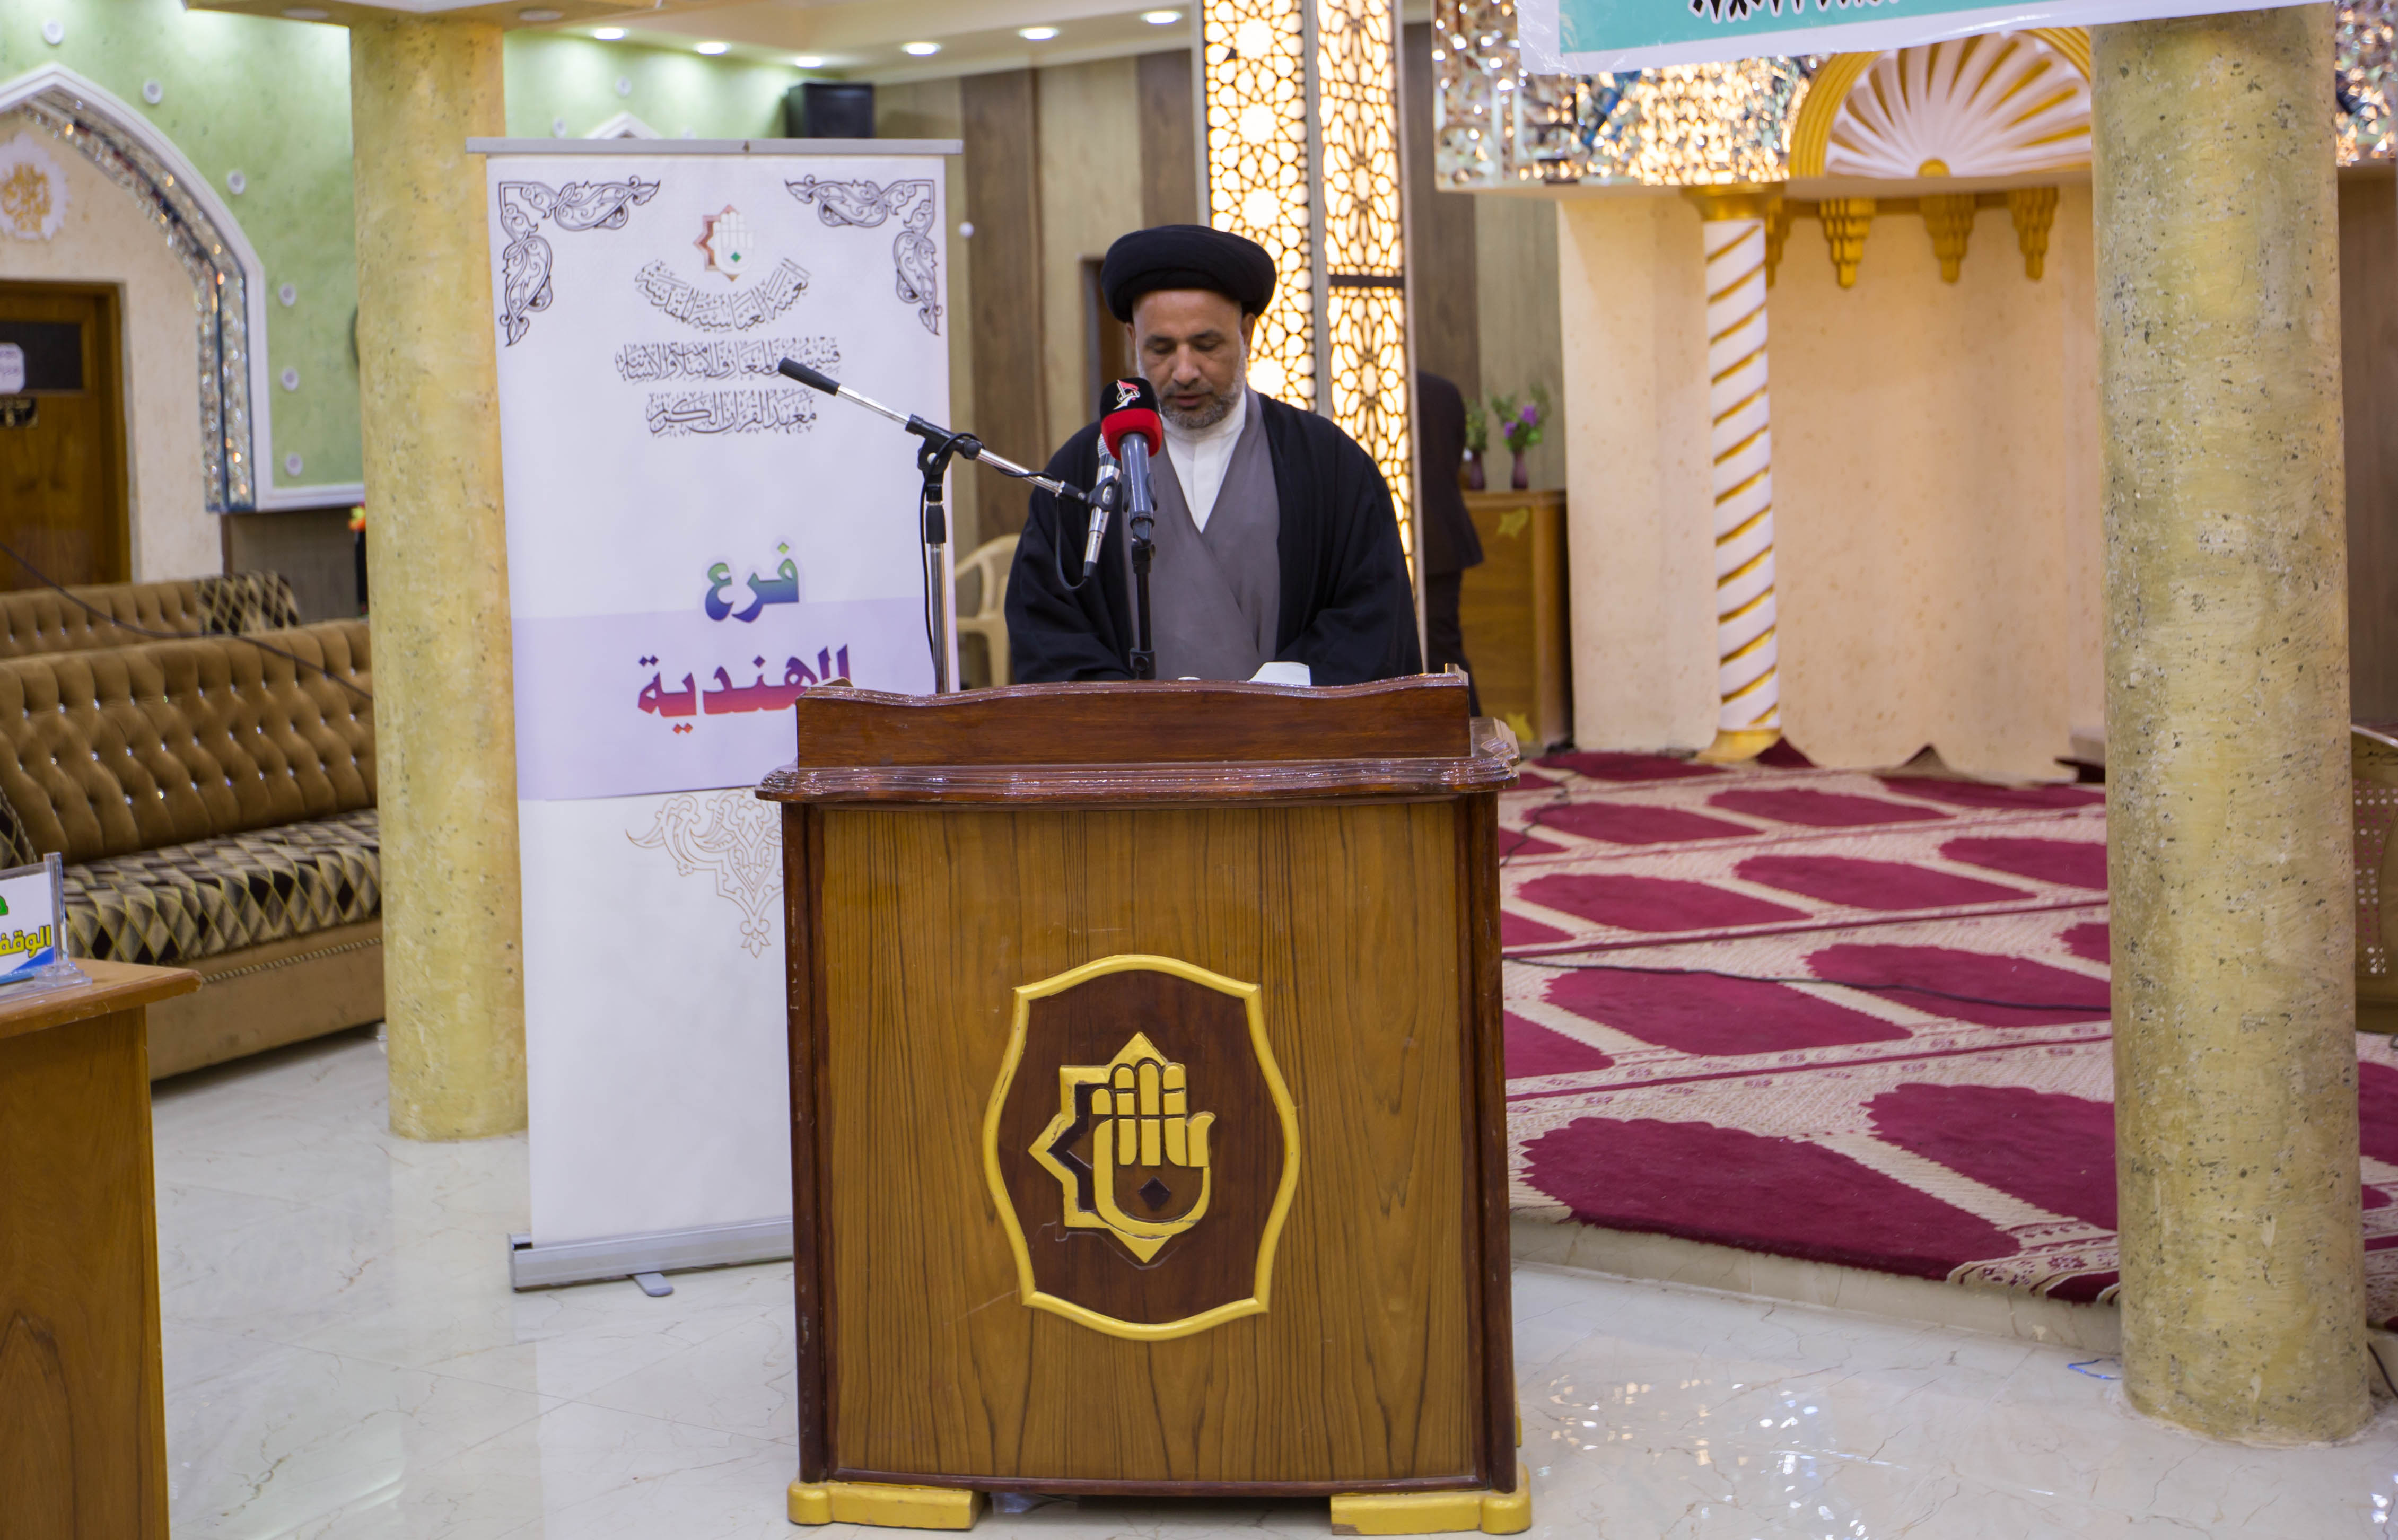 معهد القرآن الكريم/ فرع الهندية يختتم المسابقة القرآنية الثالثة للتلاوة